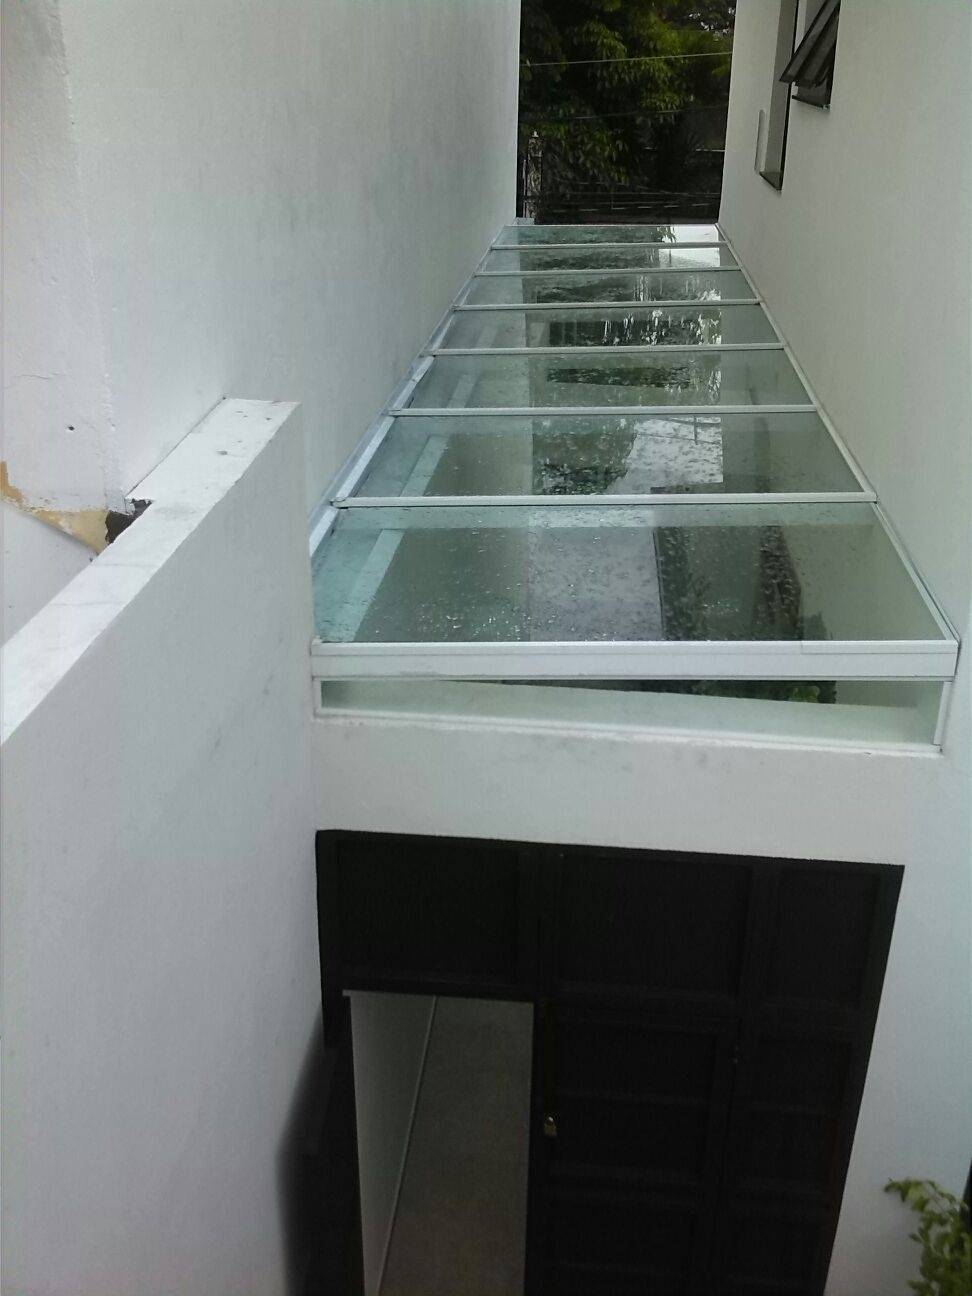 Quanto Custa o M2 de uma Cobertura de Vidro em Santo André - Cobertura de Vidro em São Mateus